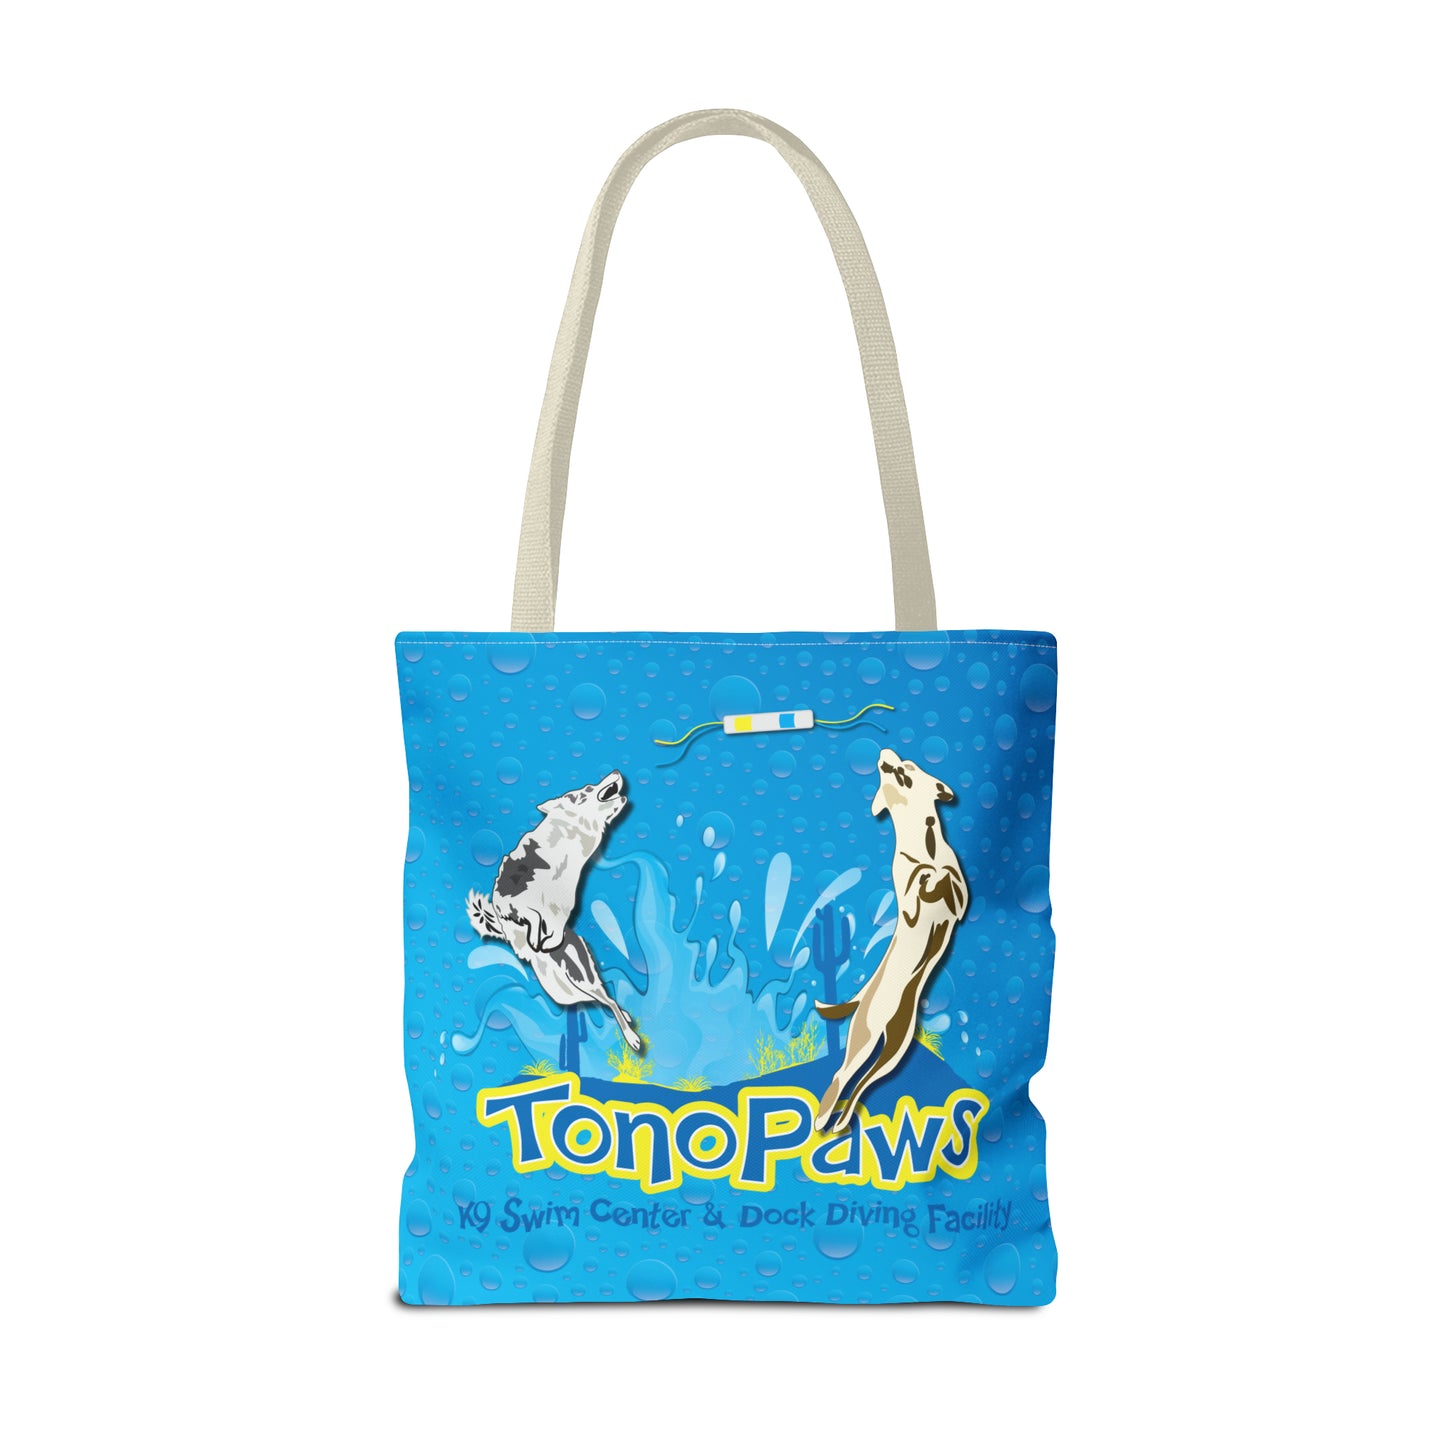 2 TONOPAWS Tote Bag